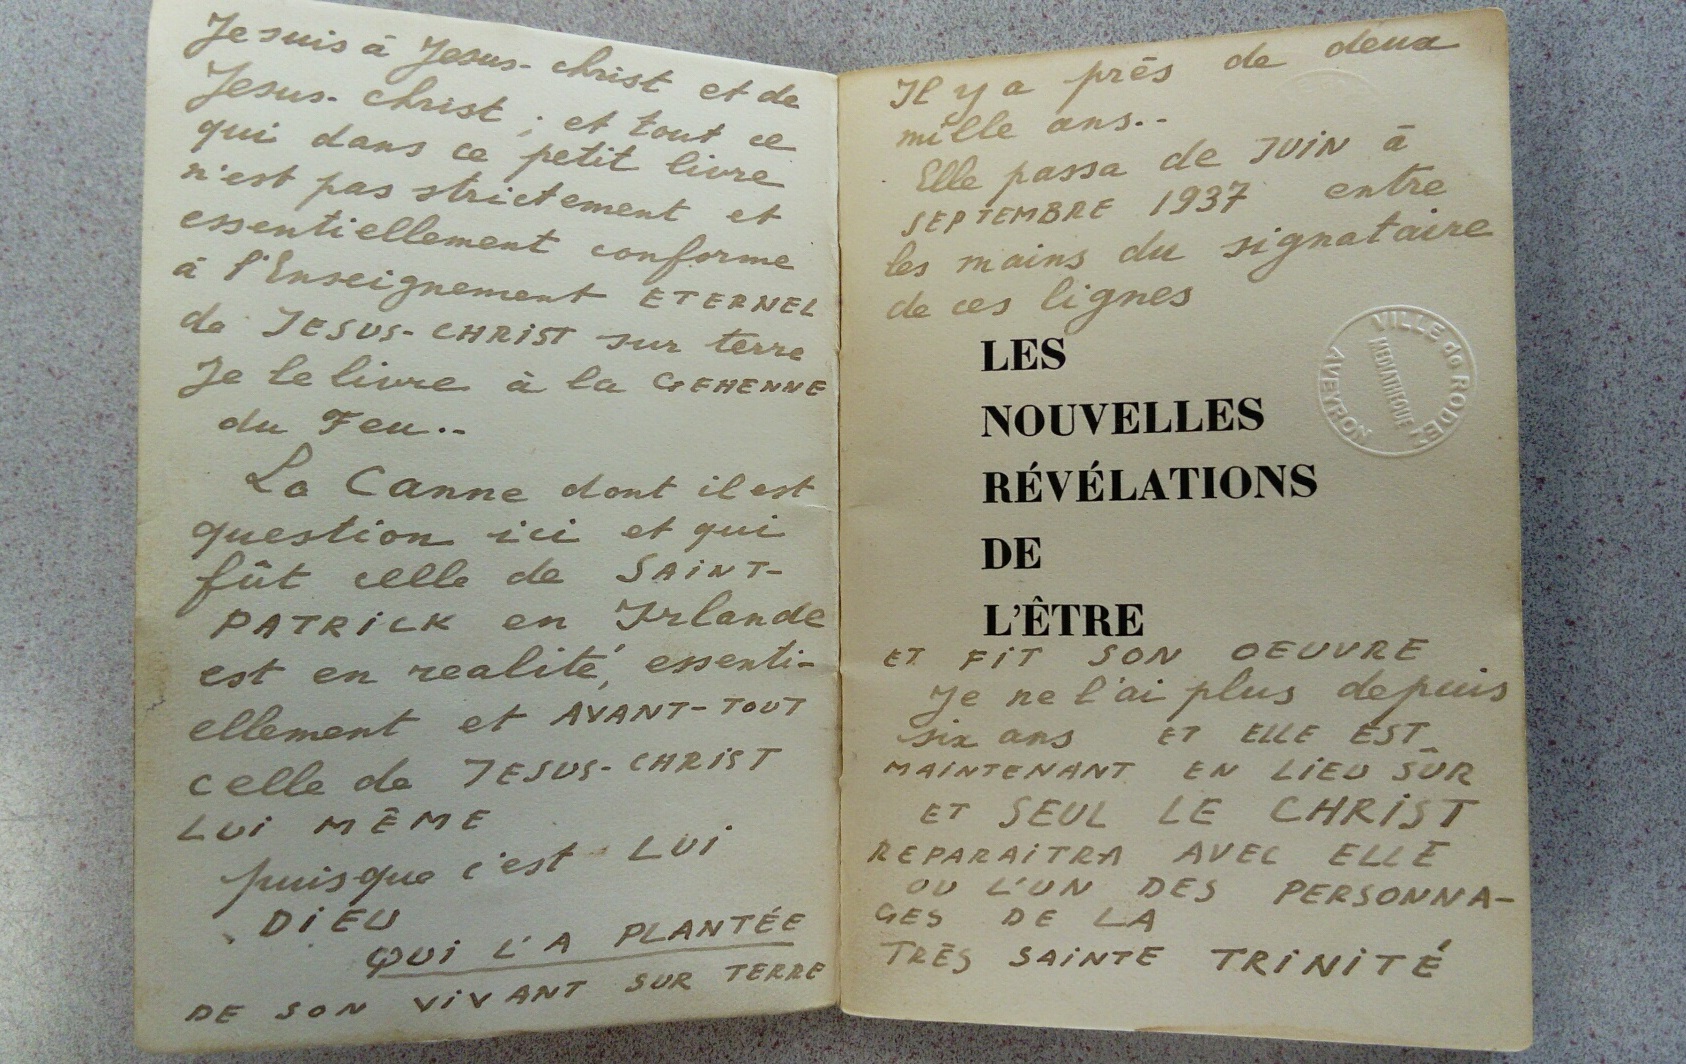 Antonin Artaud, Les nouvelles révélations de l'être. Exemplaire annoté par Artaud